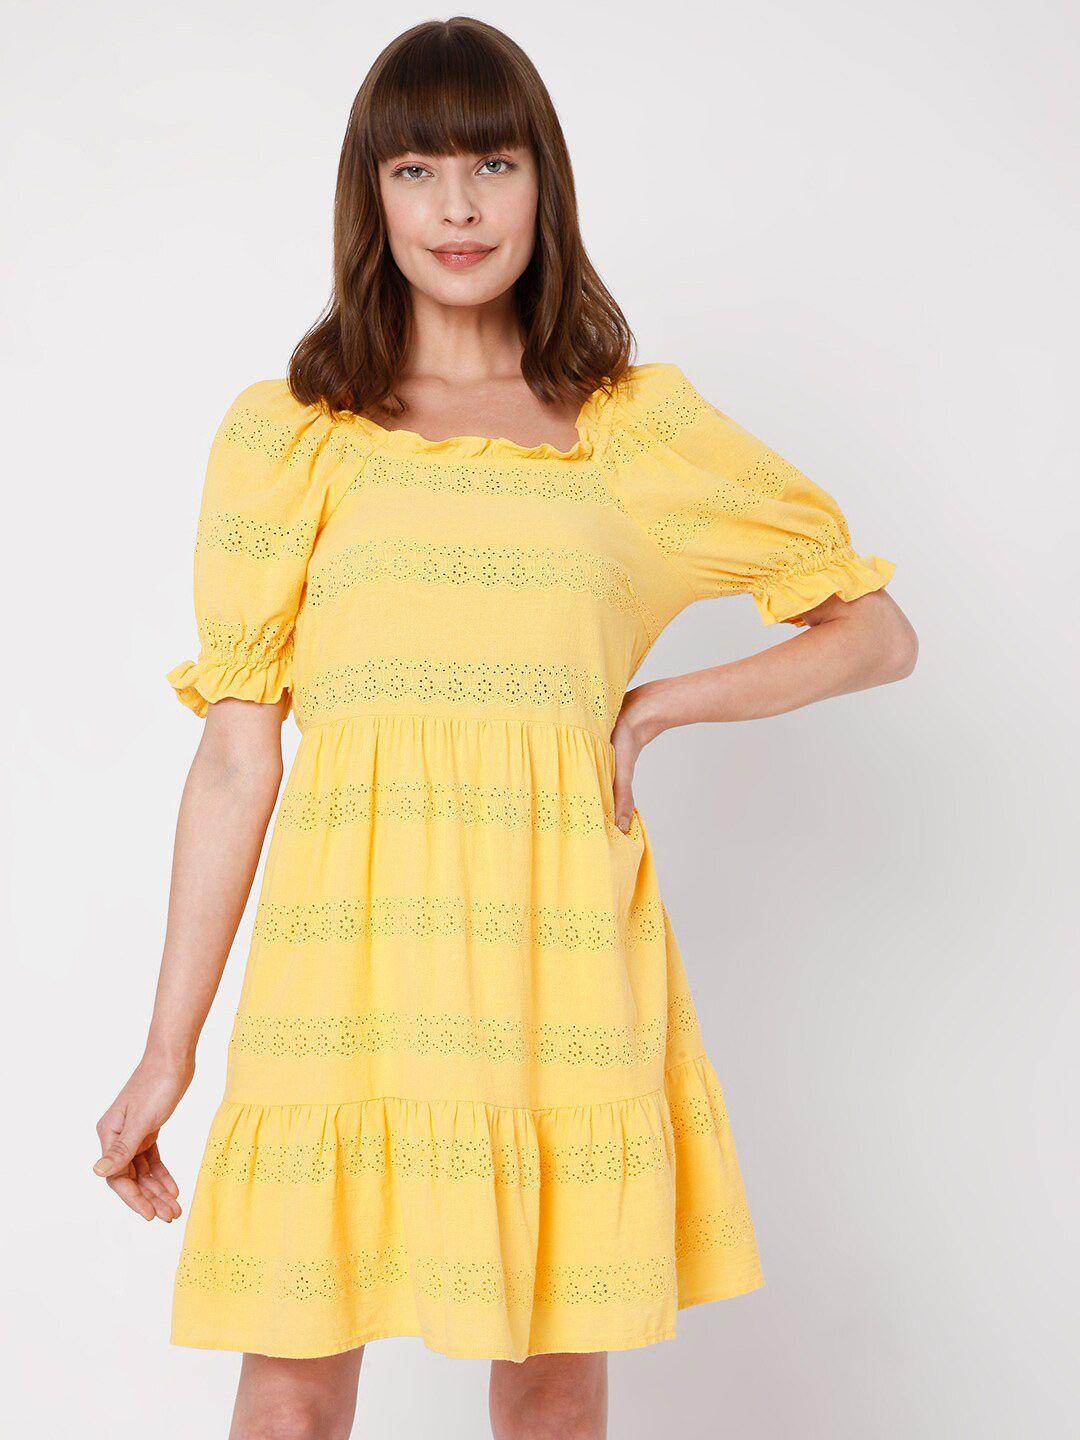 vero moda yellow schiffli dress